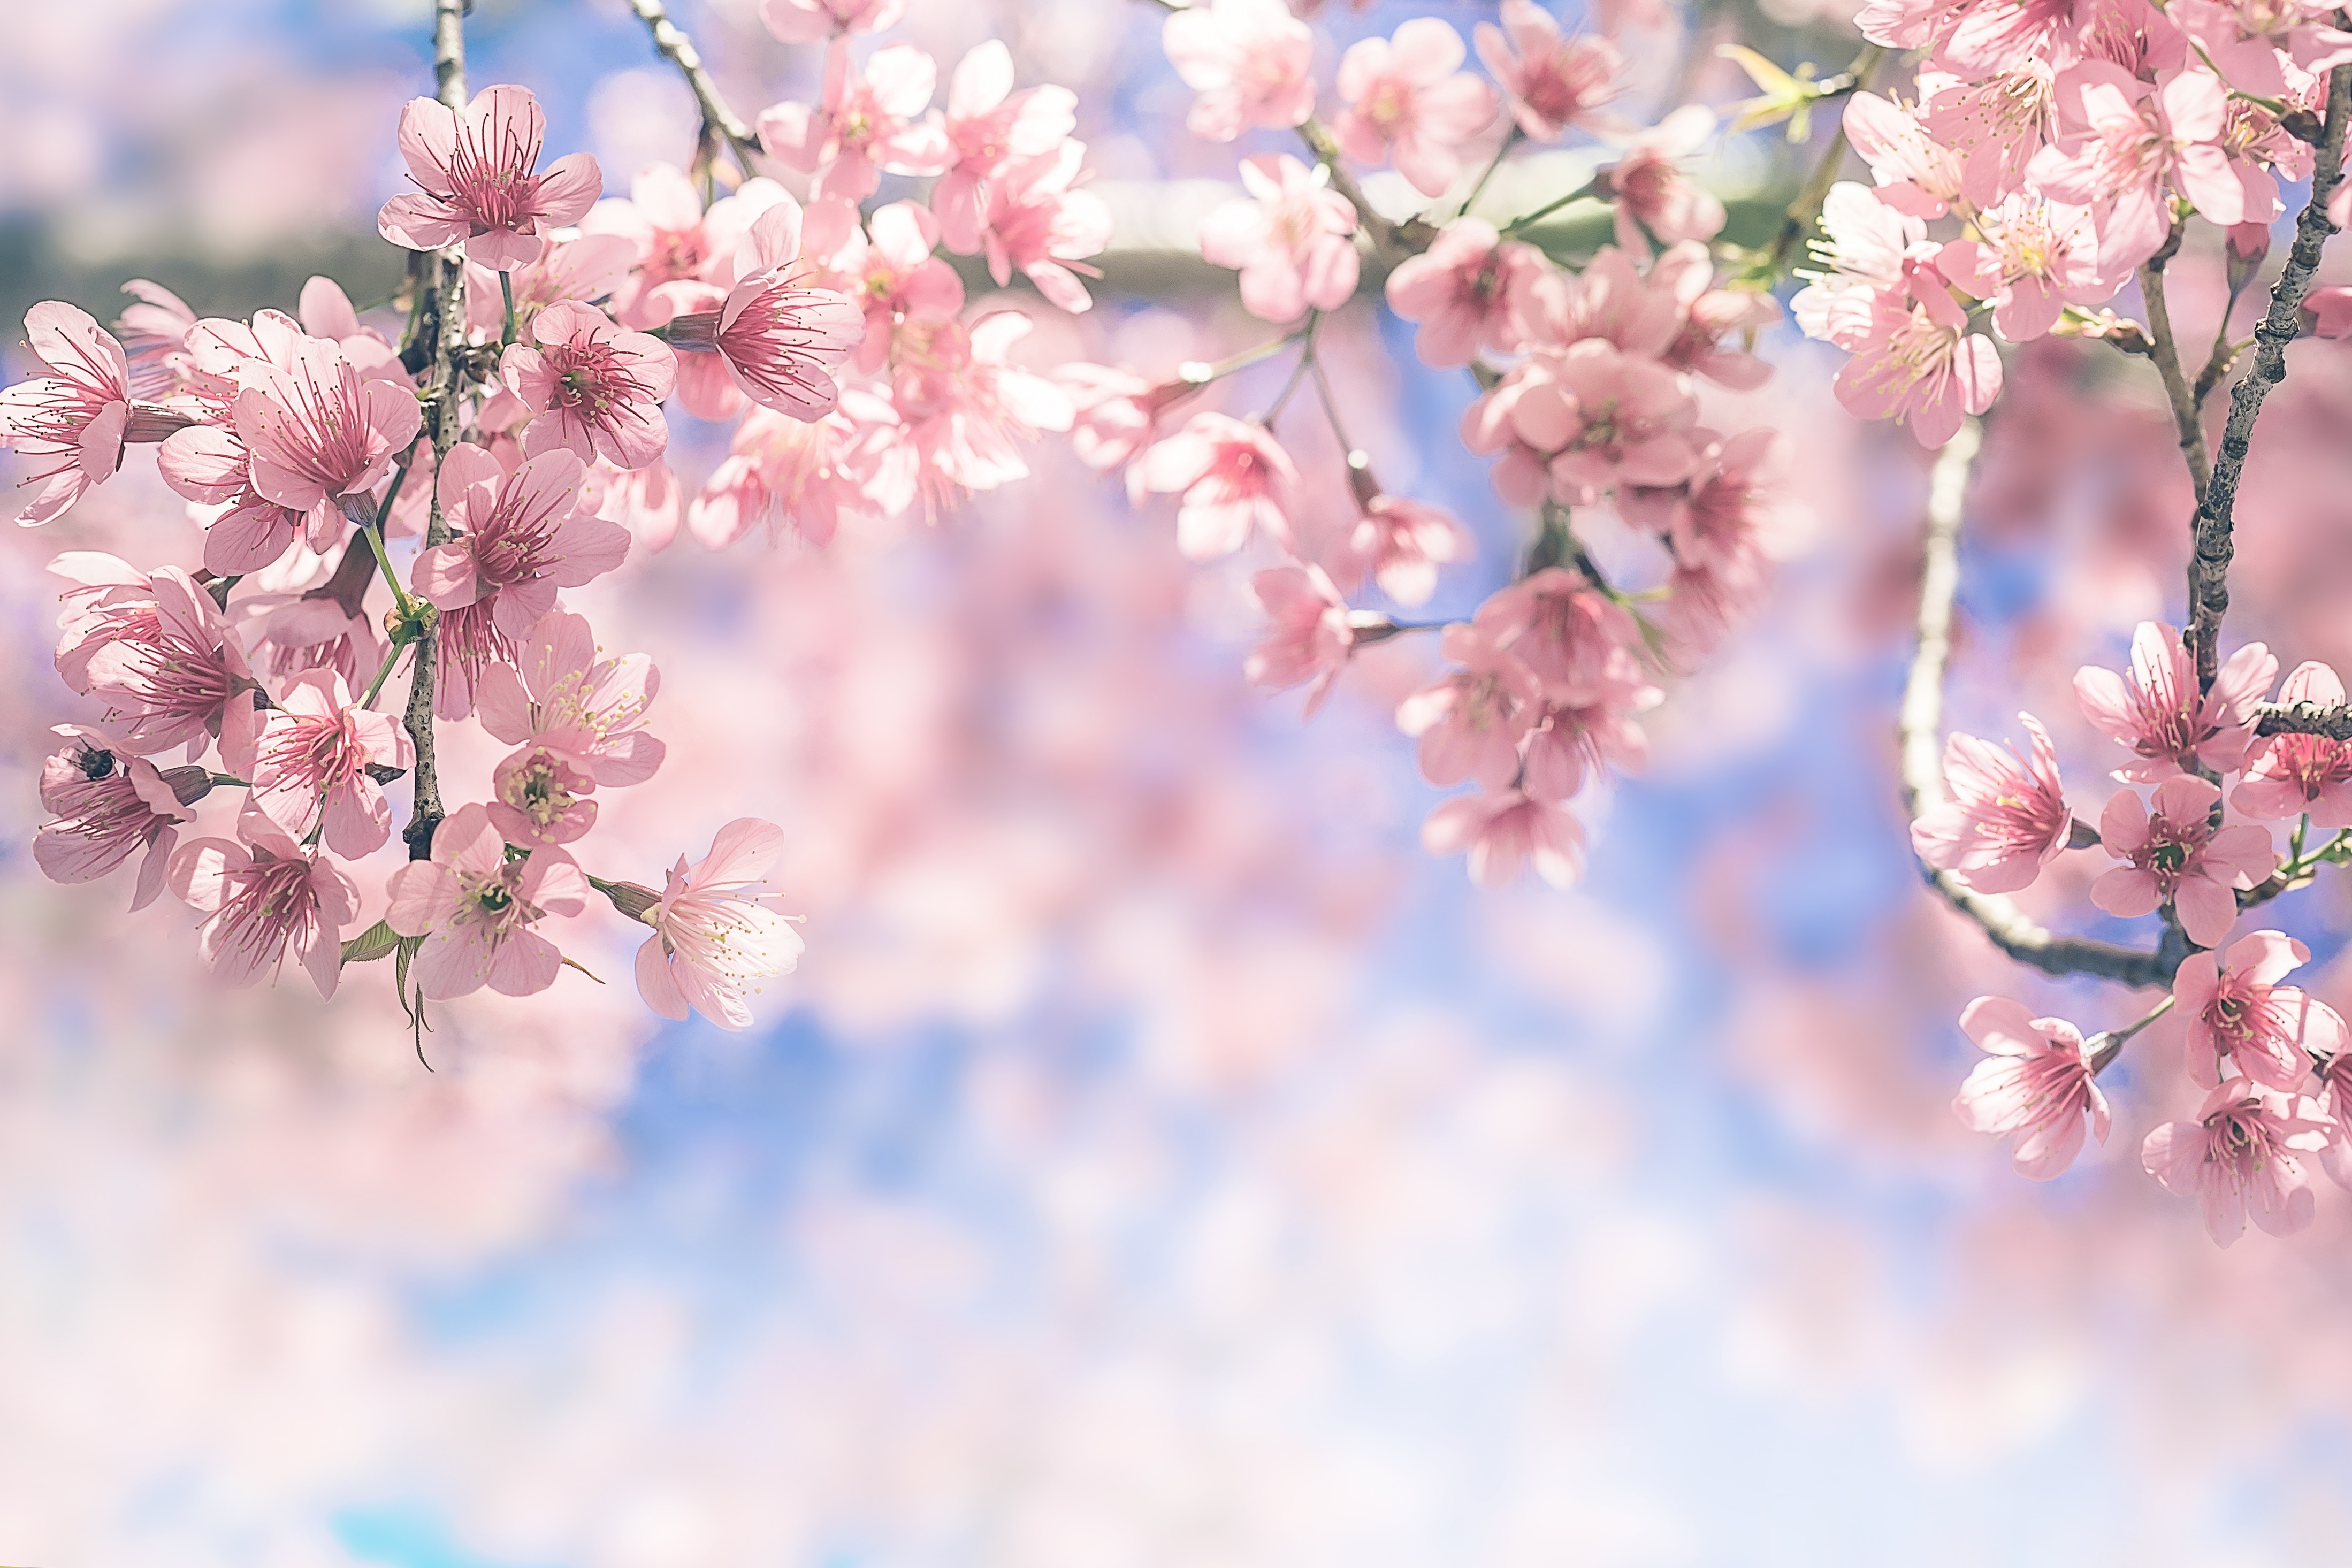 Hình ảnh Hoa Anh Đào 4k sẽ mang đến cho bạn một trải nghiệm hoàn toàn mới với độ sắc nét và rõ ràng vượt trội, từng cánh hoa nhẹ nhàng bay lượn trên nền xanh mướt sẽ khiến bạn cảm thấy như đang đứng trước một vườn hoa tuyệt đẹp.